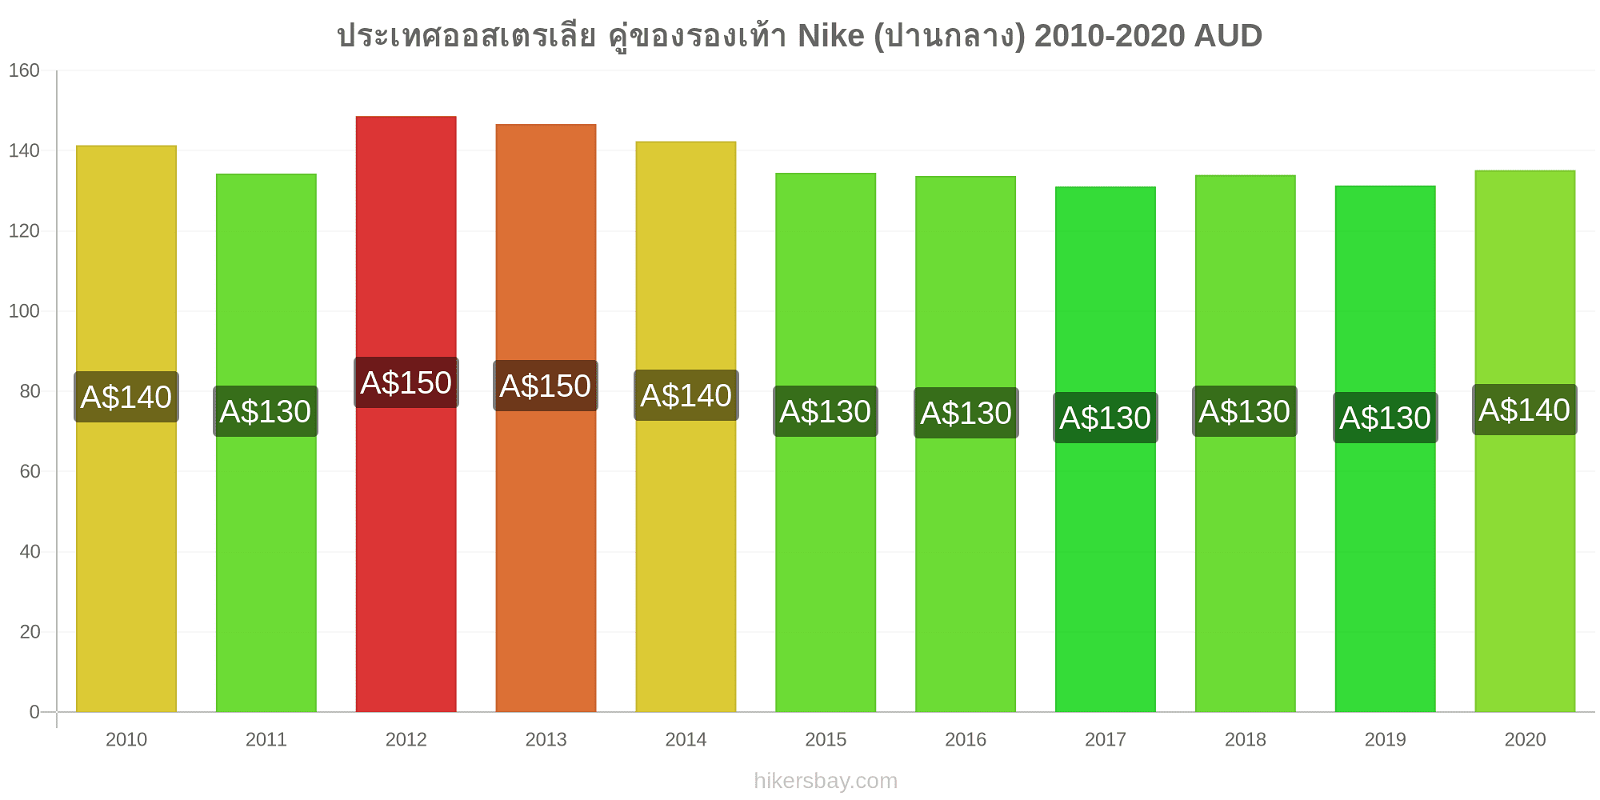 ประเทศออสเตรเลีย การเปลี่ยนแปลงราคา คู่ของรองเท้า Nike (ปานกลาง) hikersbay.com